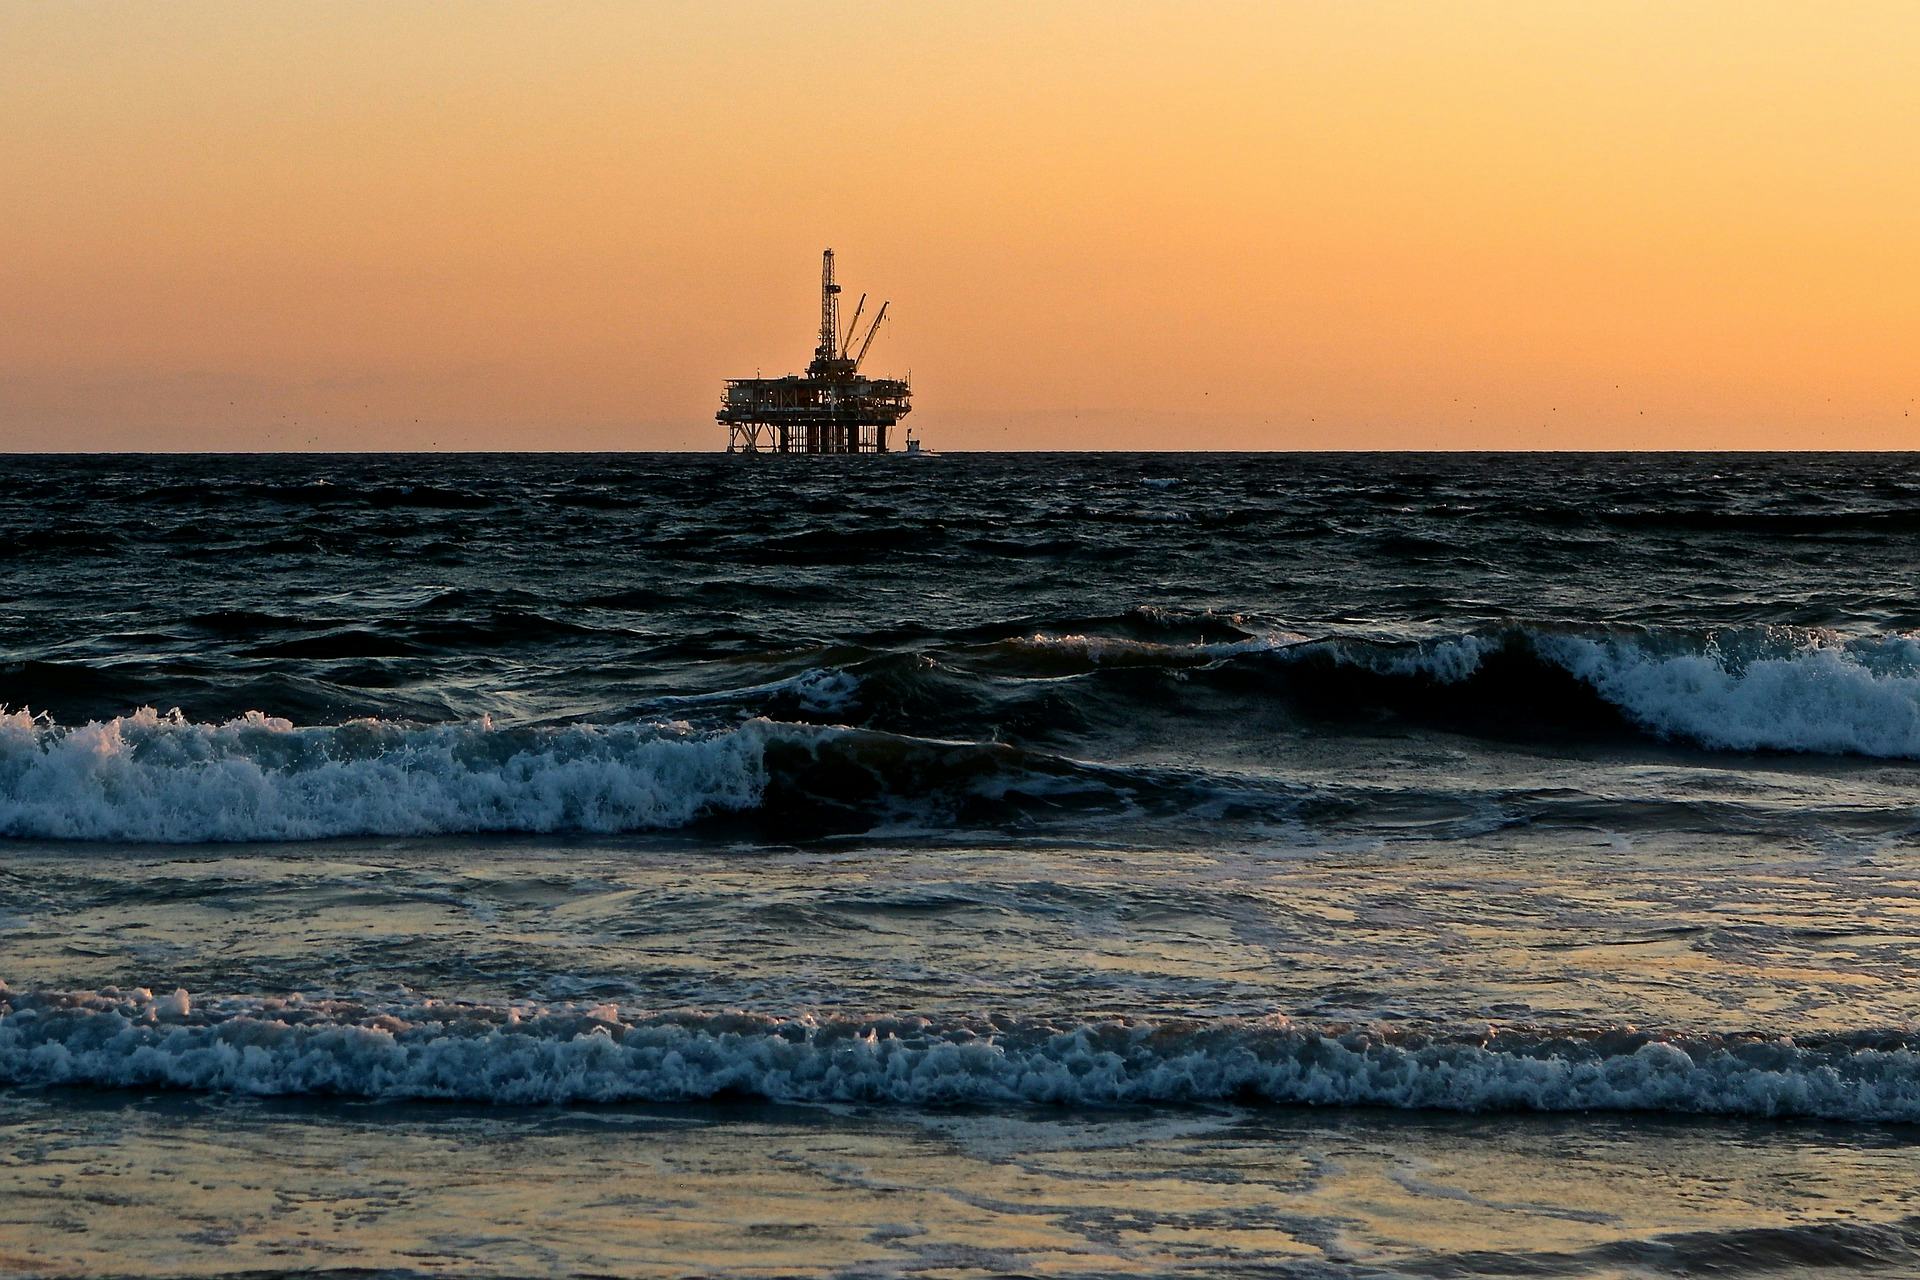 'Minderheid verzekeraars port Shell om klimaatbeleid'